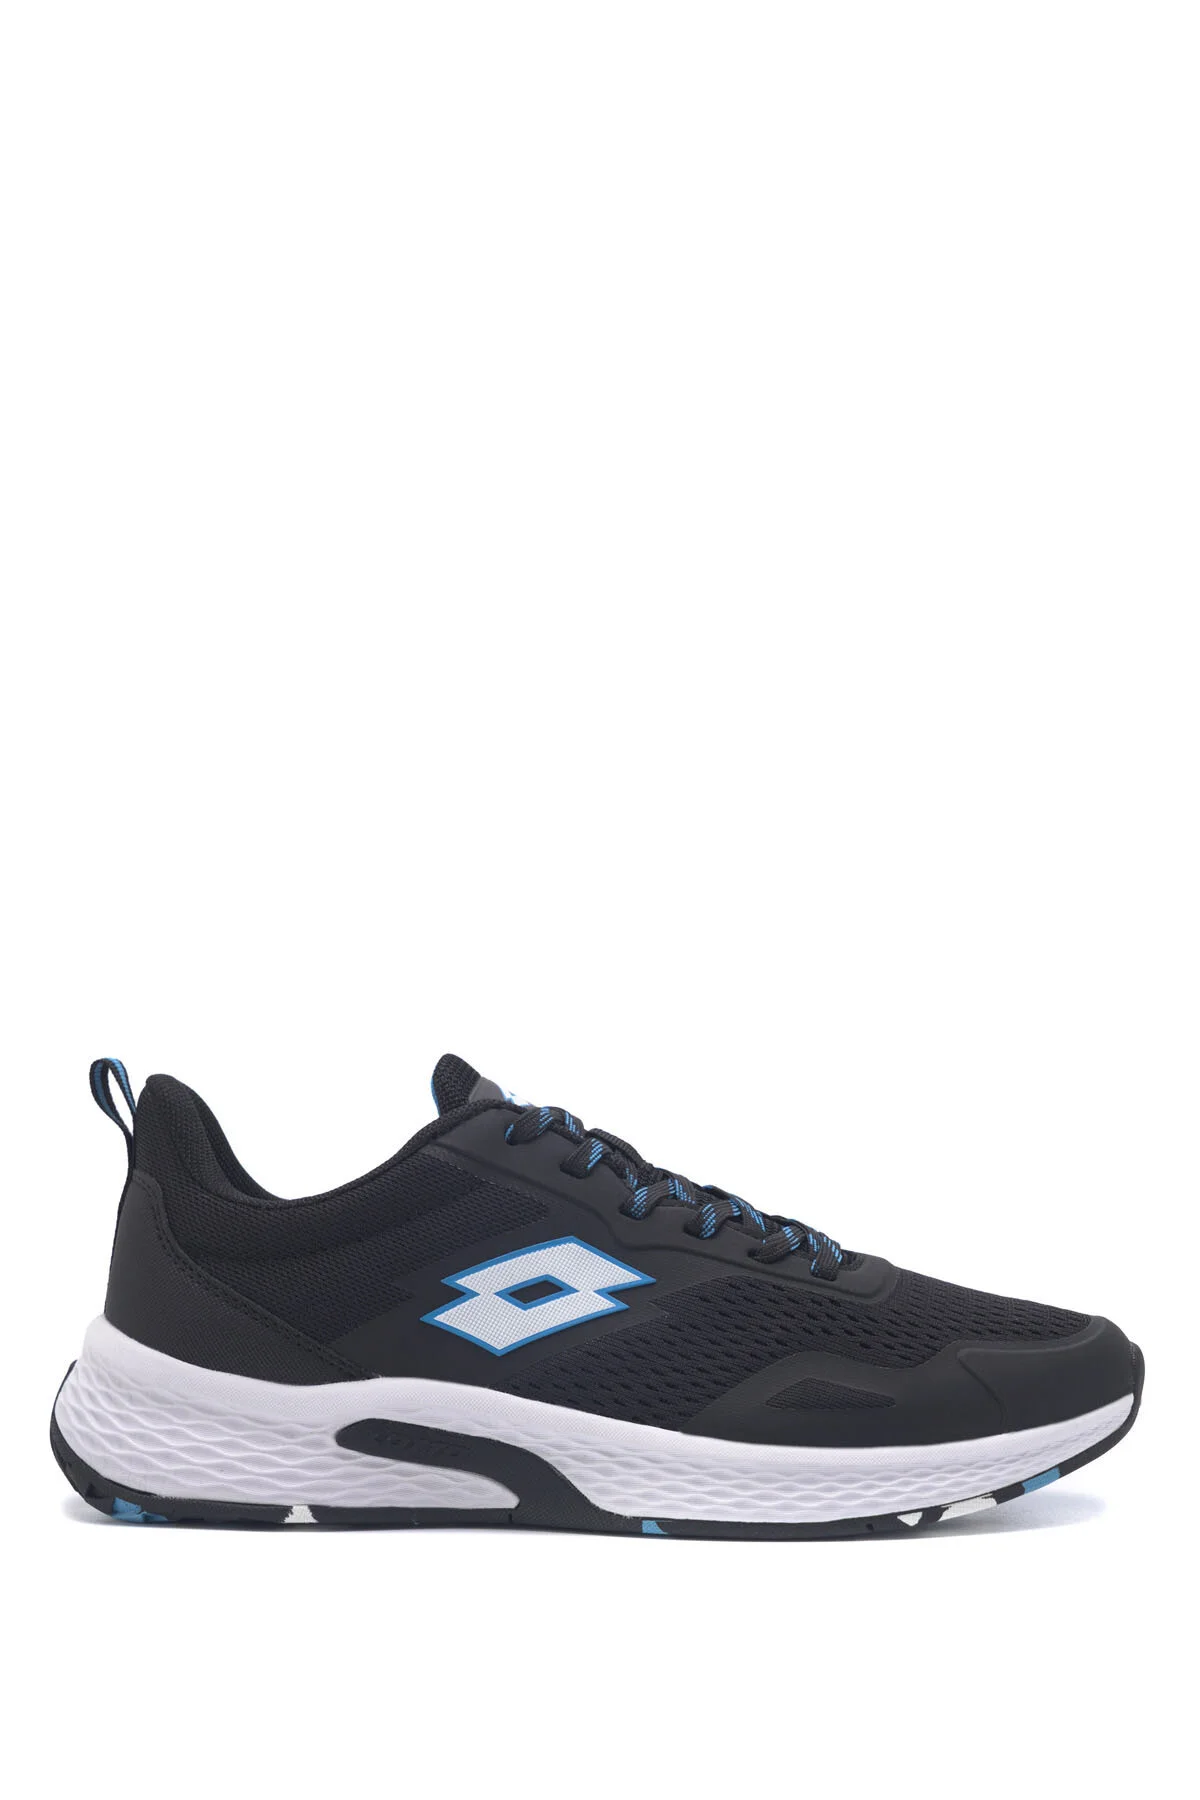 LOTTO - ENFIELD 3FX Erkek Koşu Ayakkabısı-Siyah-Mavi